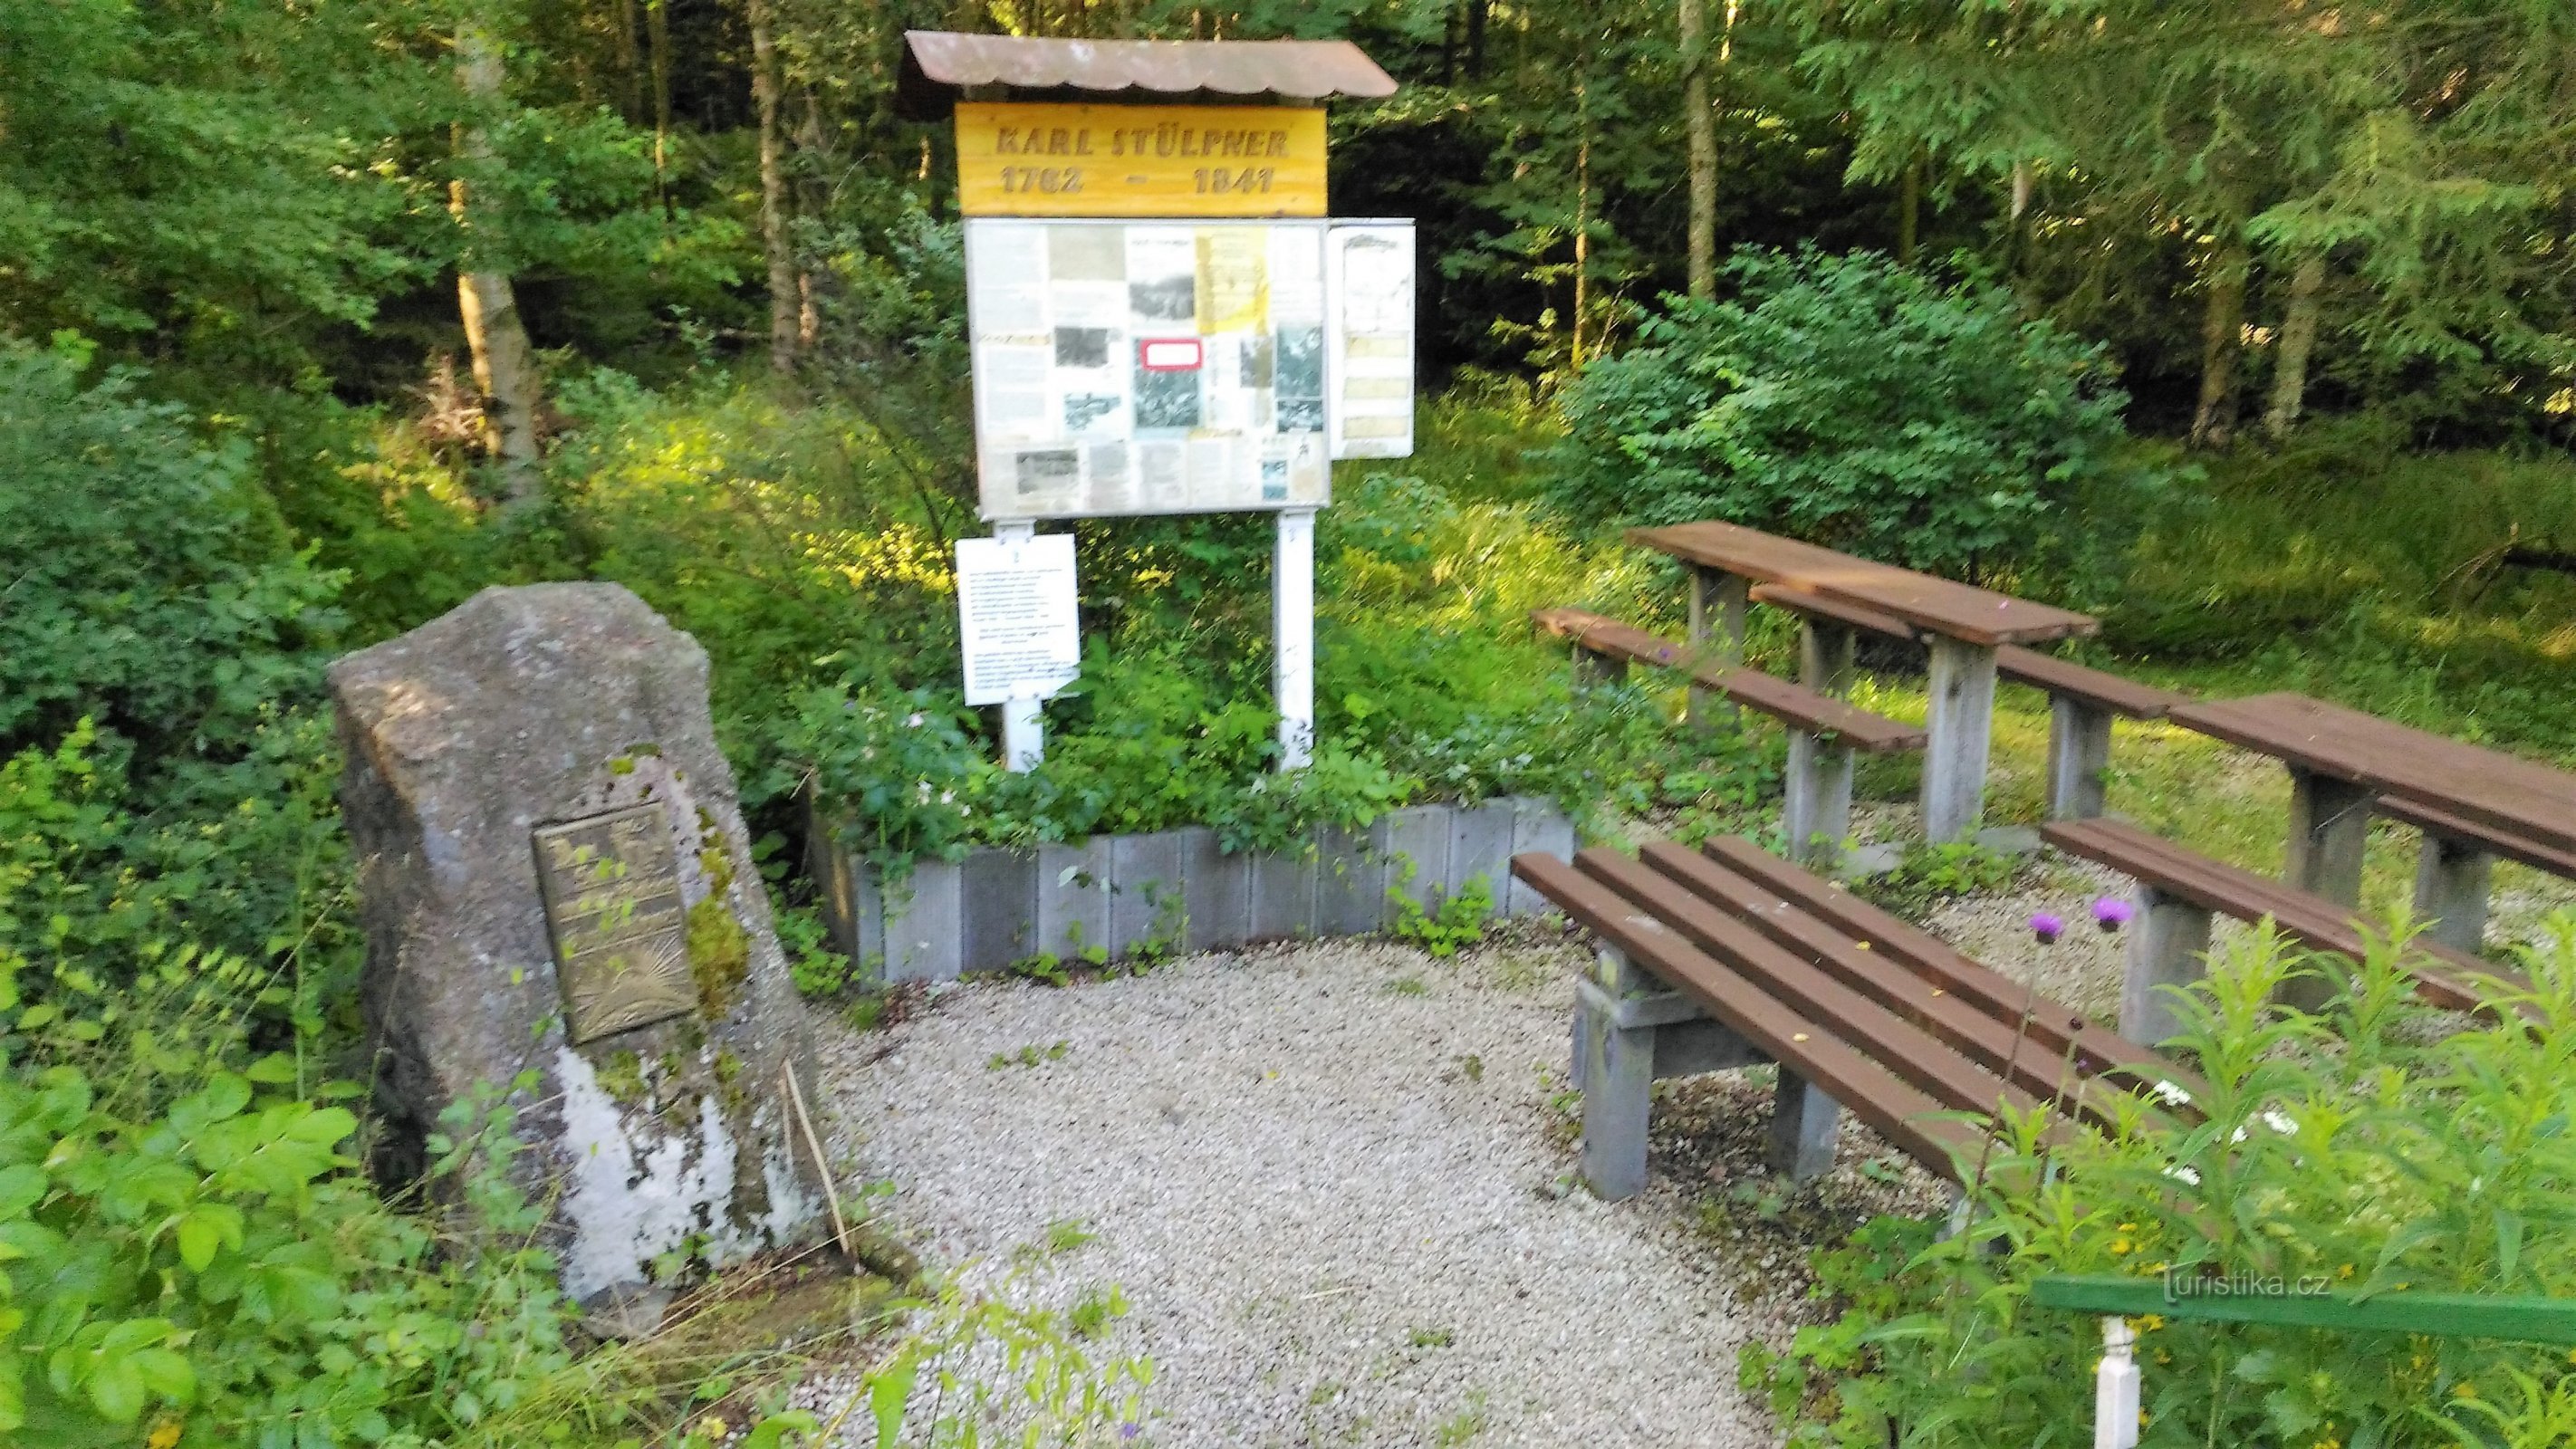 Le monument de Stülpner dans les monts Métallifères.